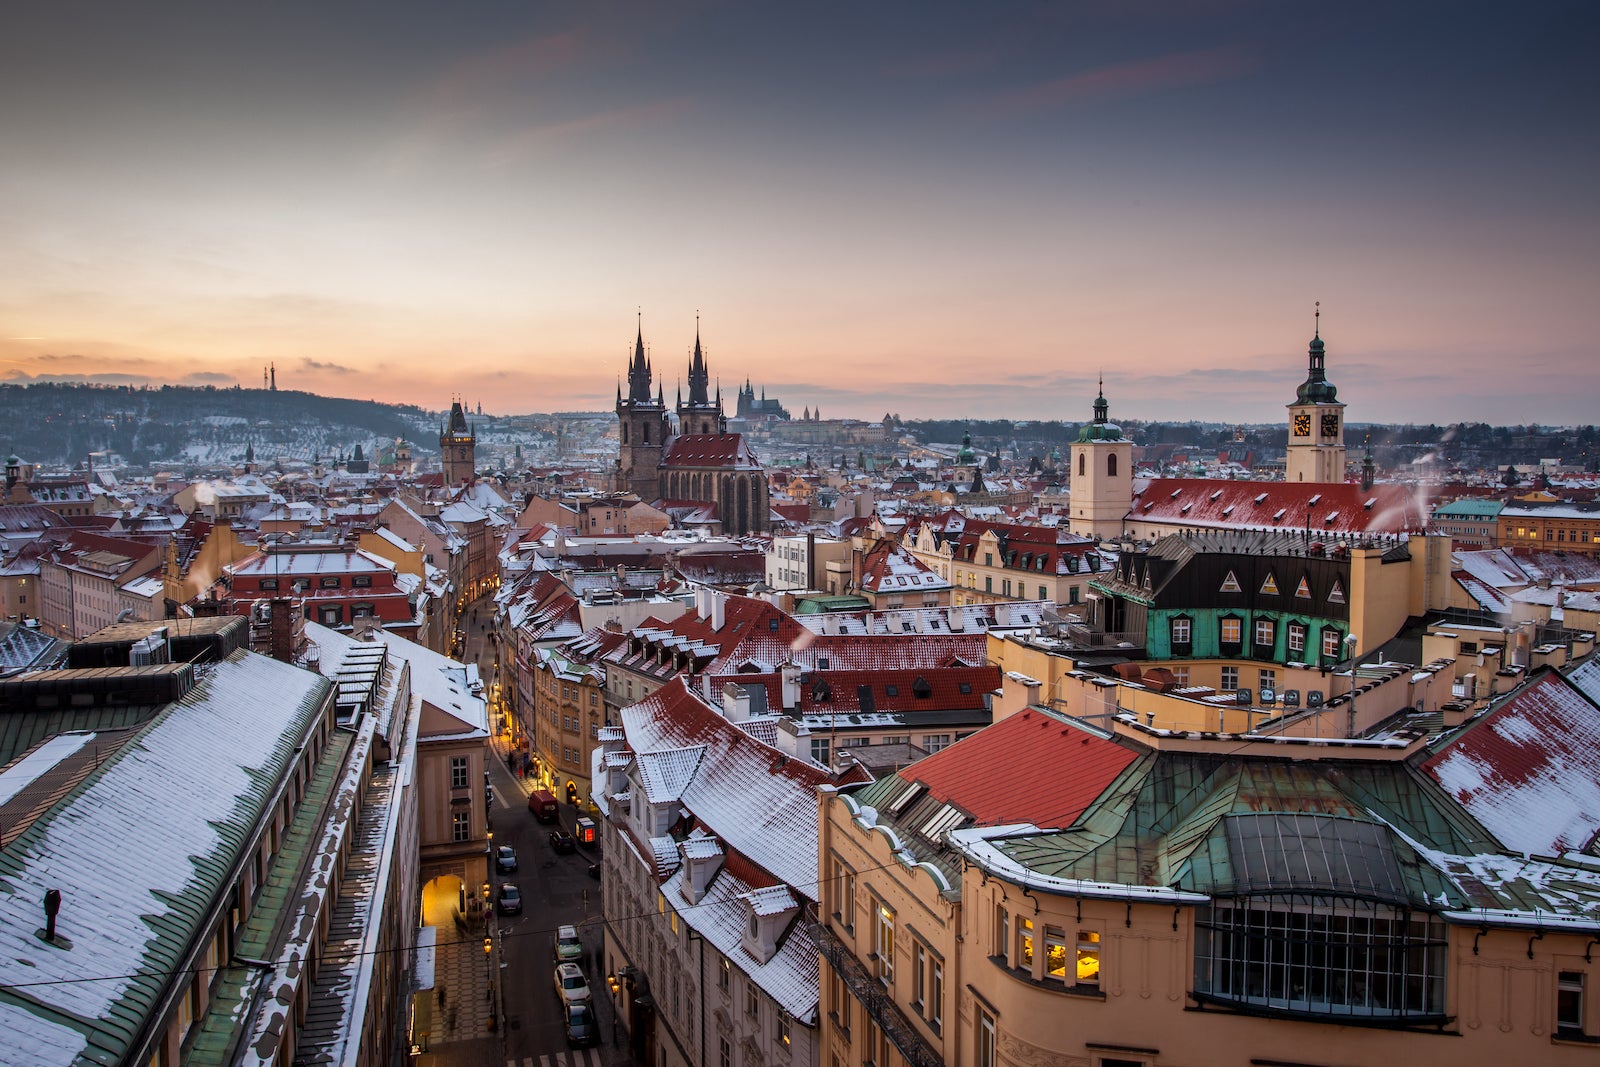 Historical center of Prague in winter